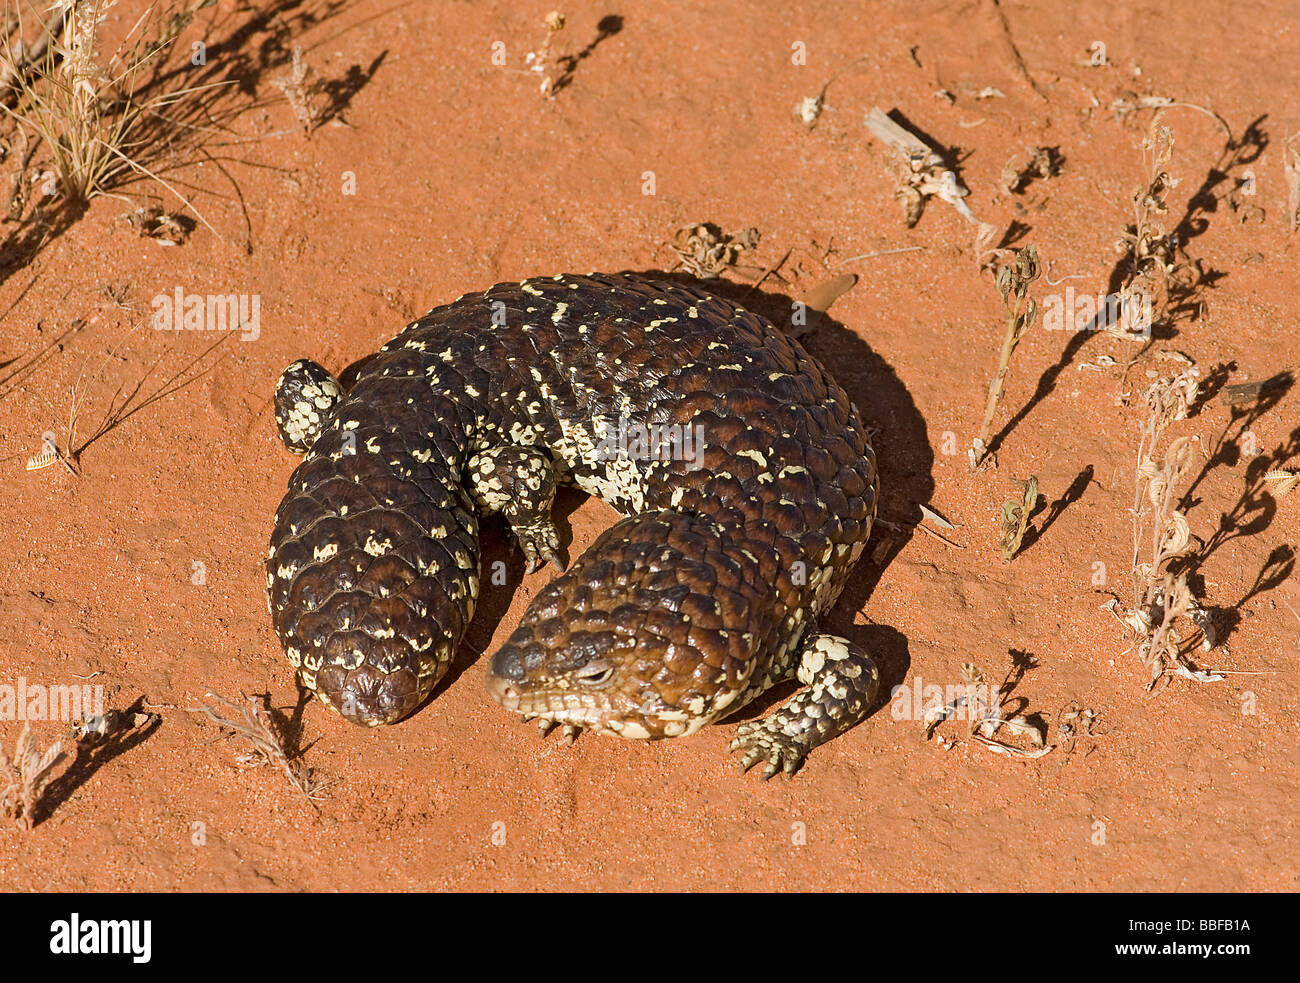 Shingleback or Australian sleepy lizard Stock Photo